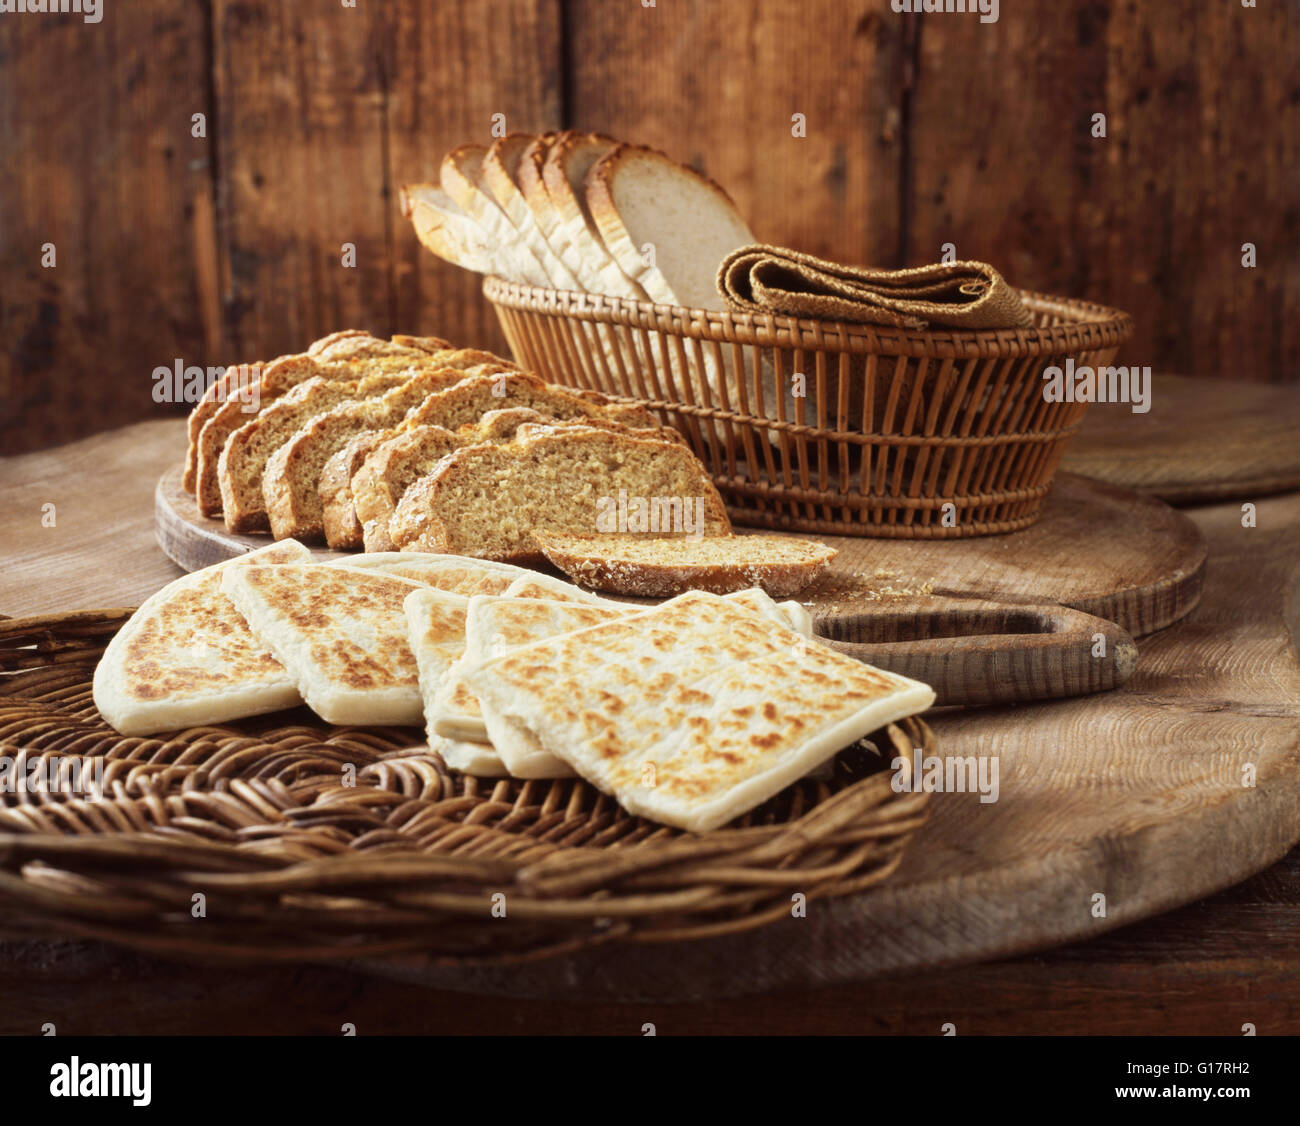 Pain irlandais pain de soude, et des tranches de pain blanc sur les planches à découper en bois Banque D'Images